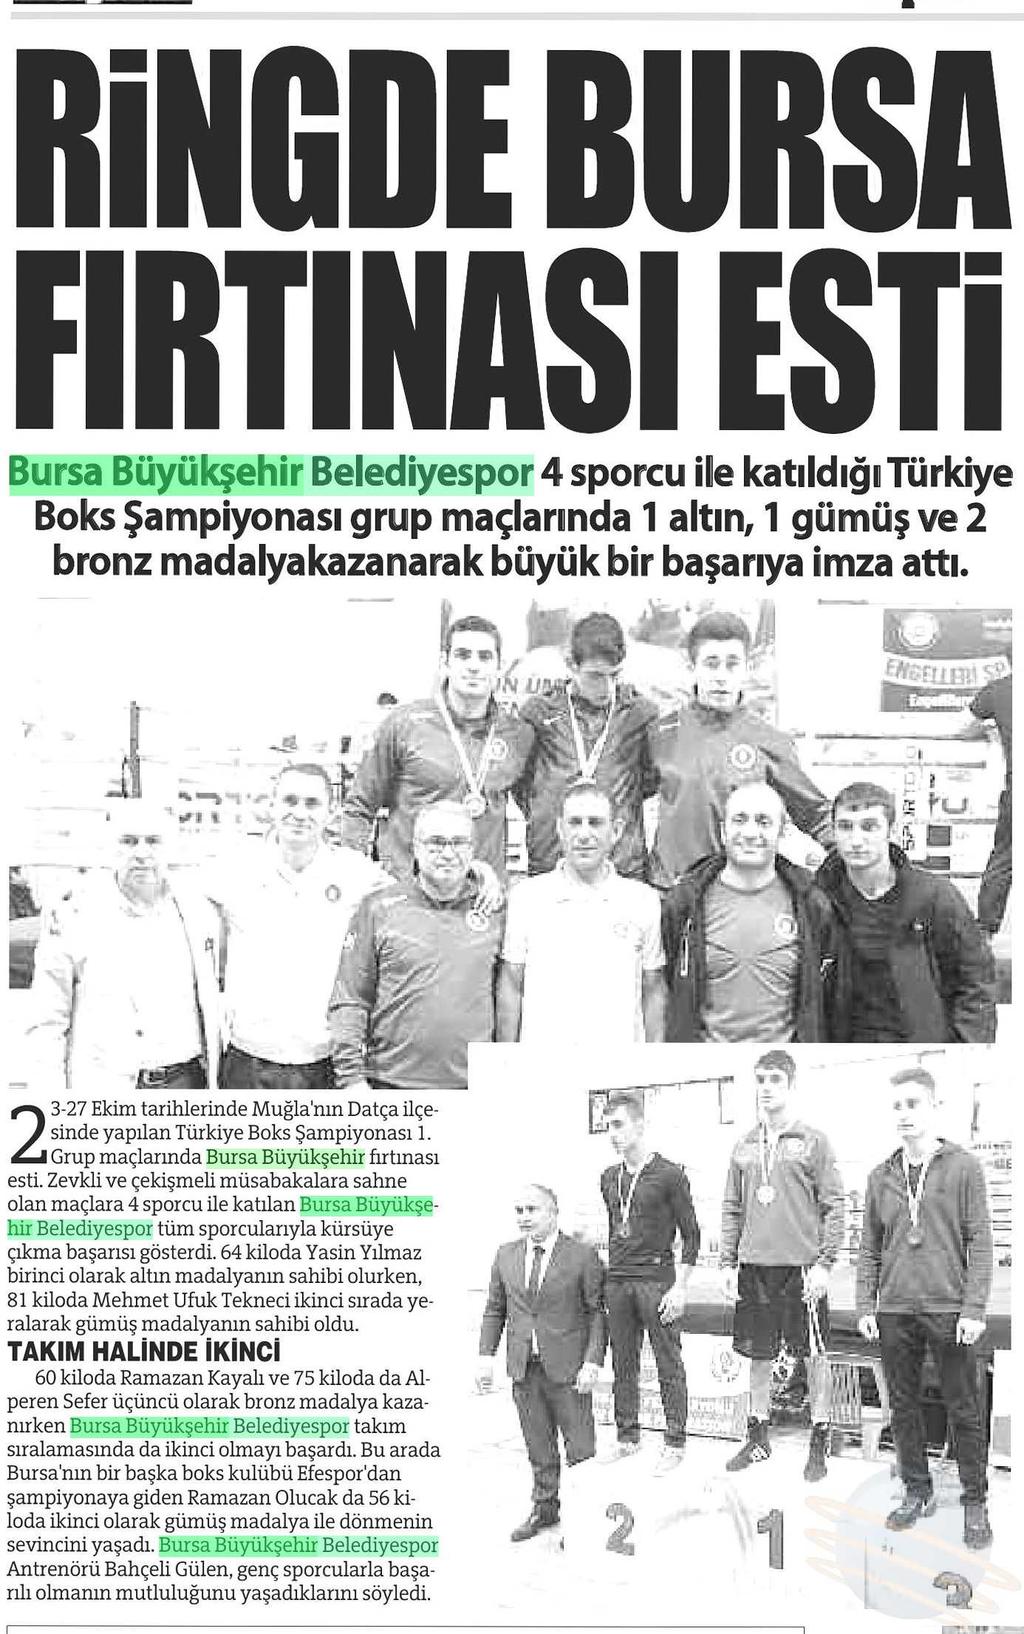 RINGDE BURSA FIRTINASI ESTI Yayın Adı : Bursa'da